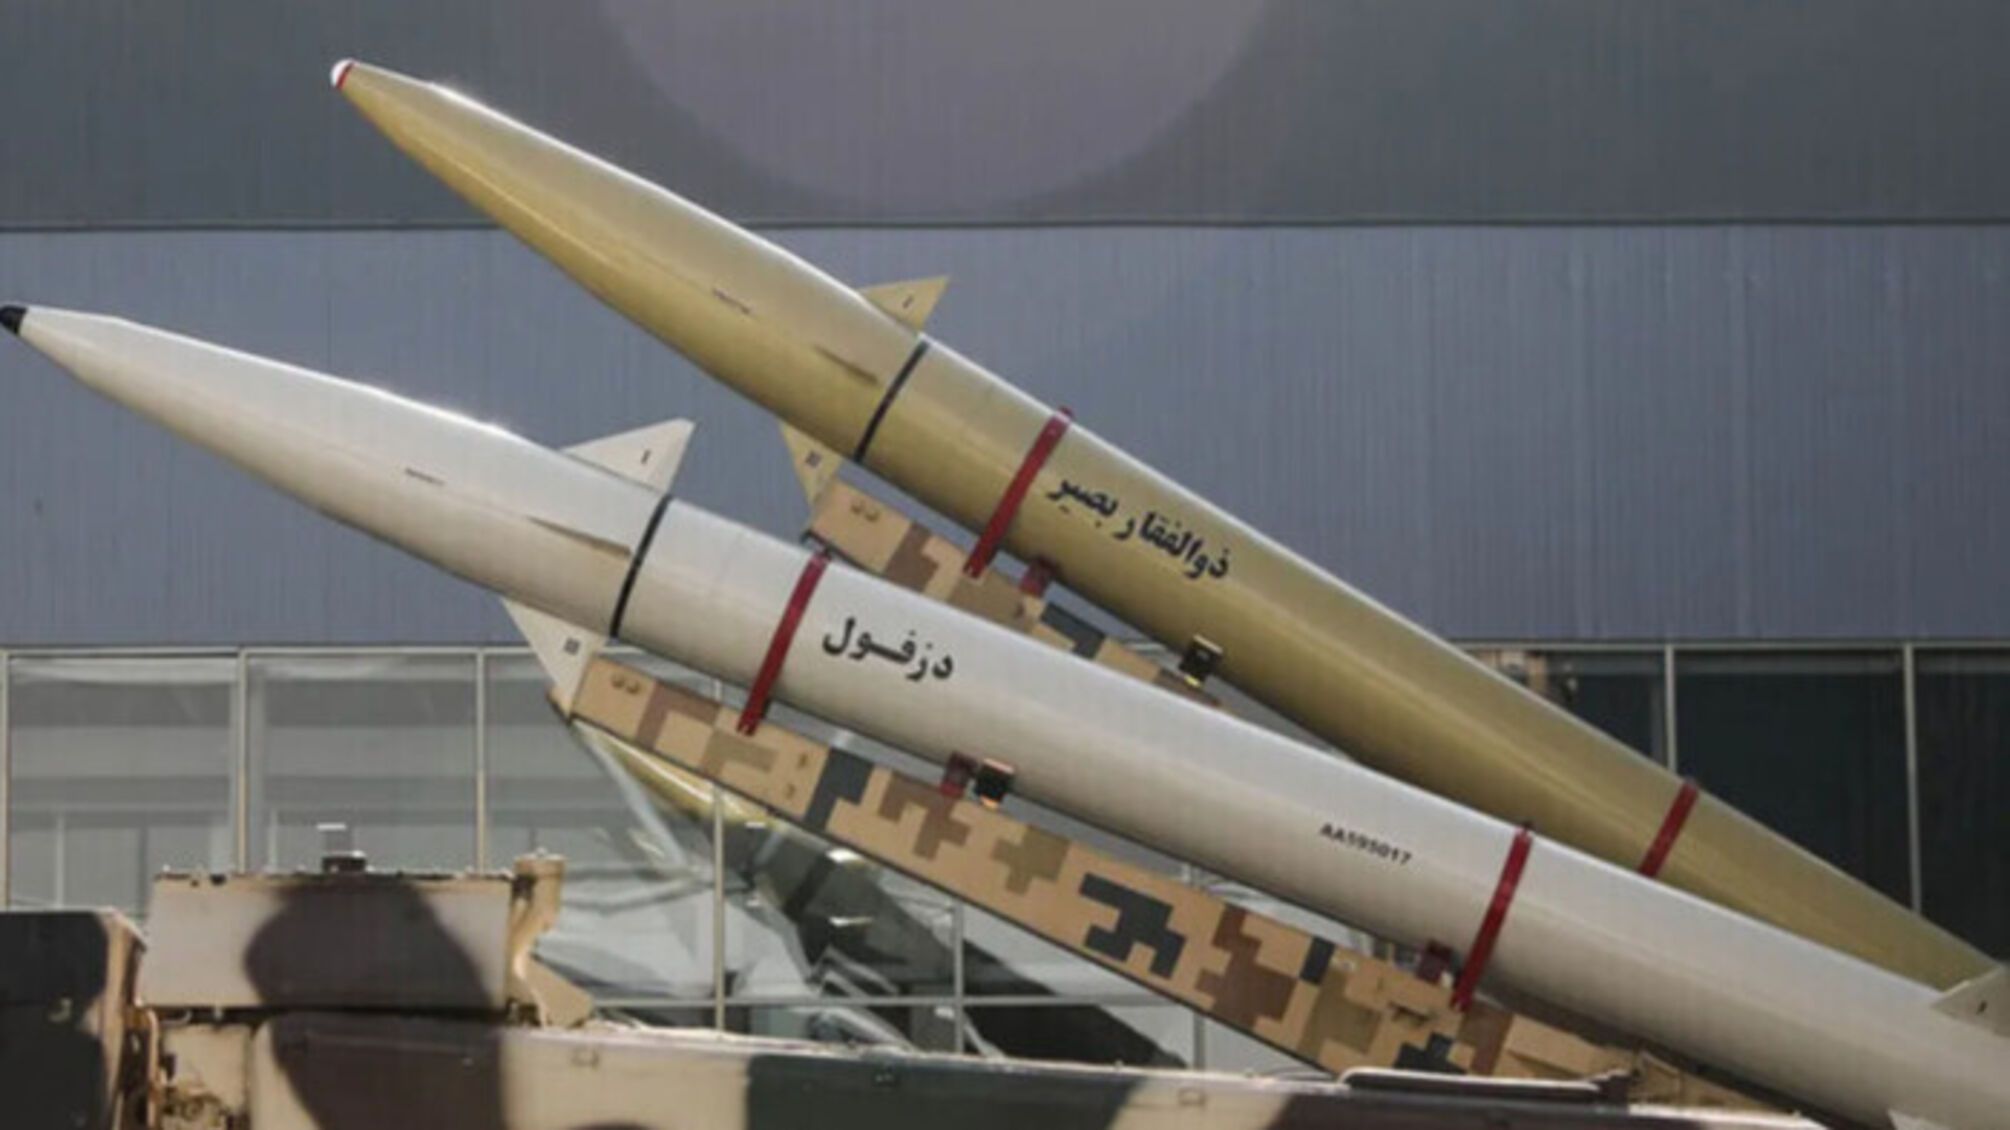 Иран отправил россии около 400 баллистических ракет и в дальнейшем поставок будет больше, - Reuters